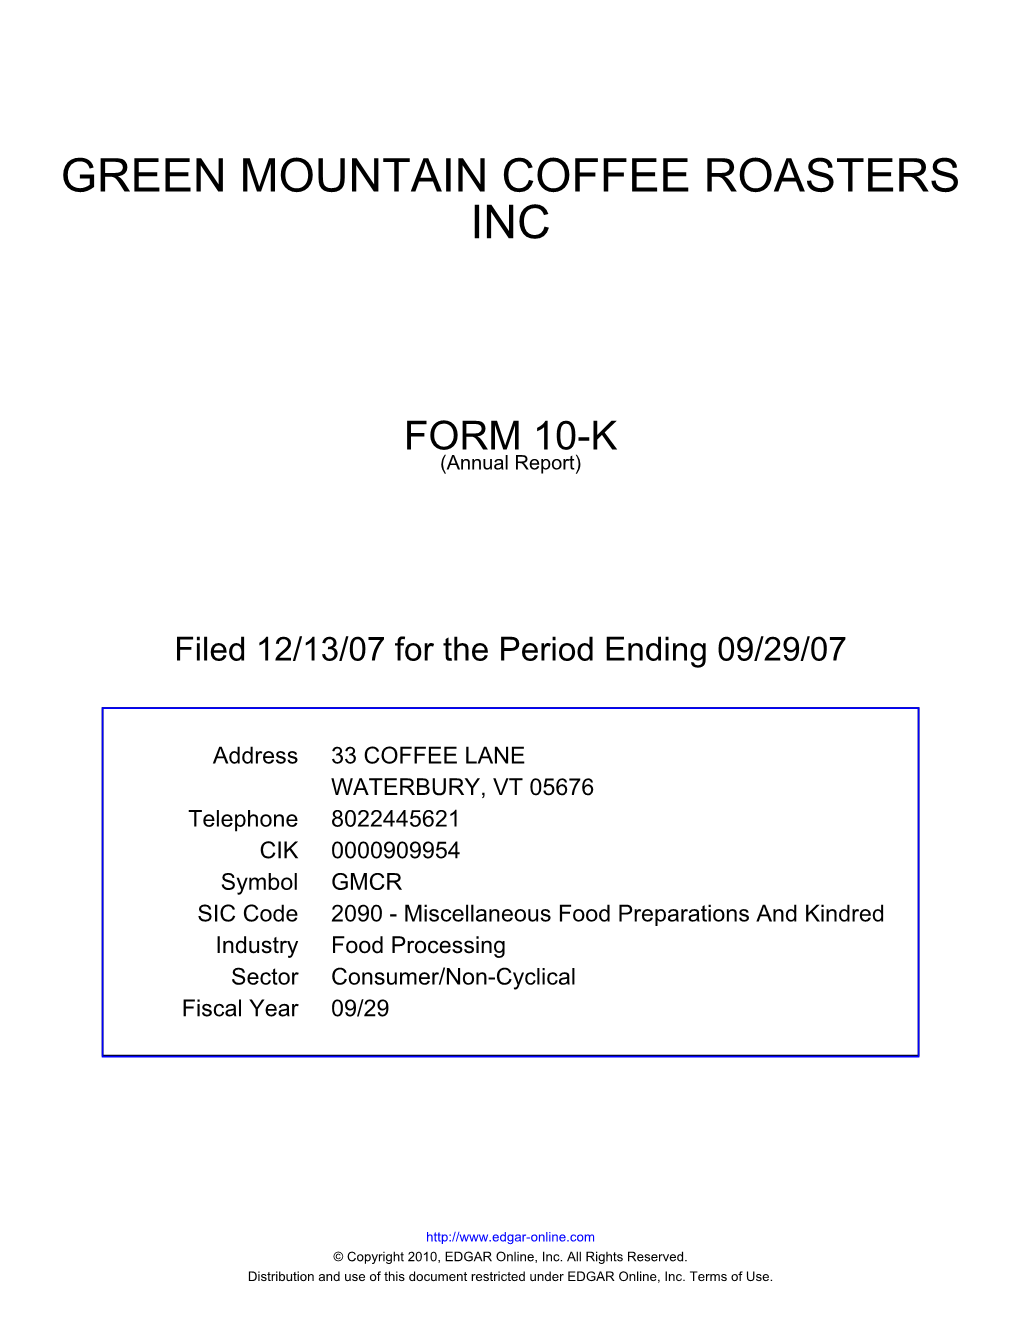 Green Mountain Coffee Roasters Inc